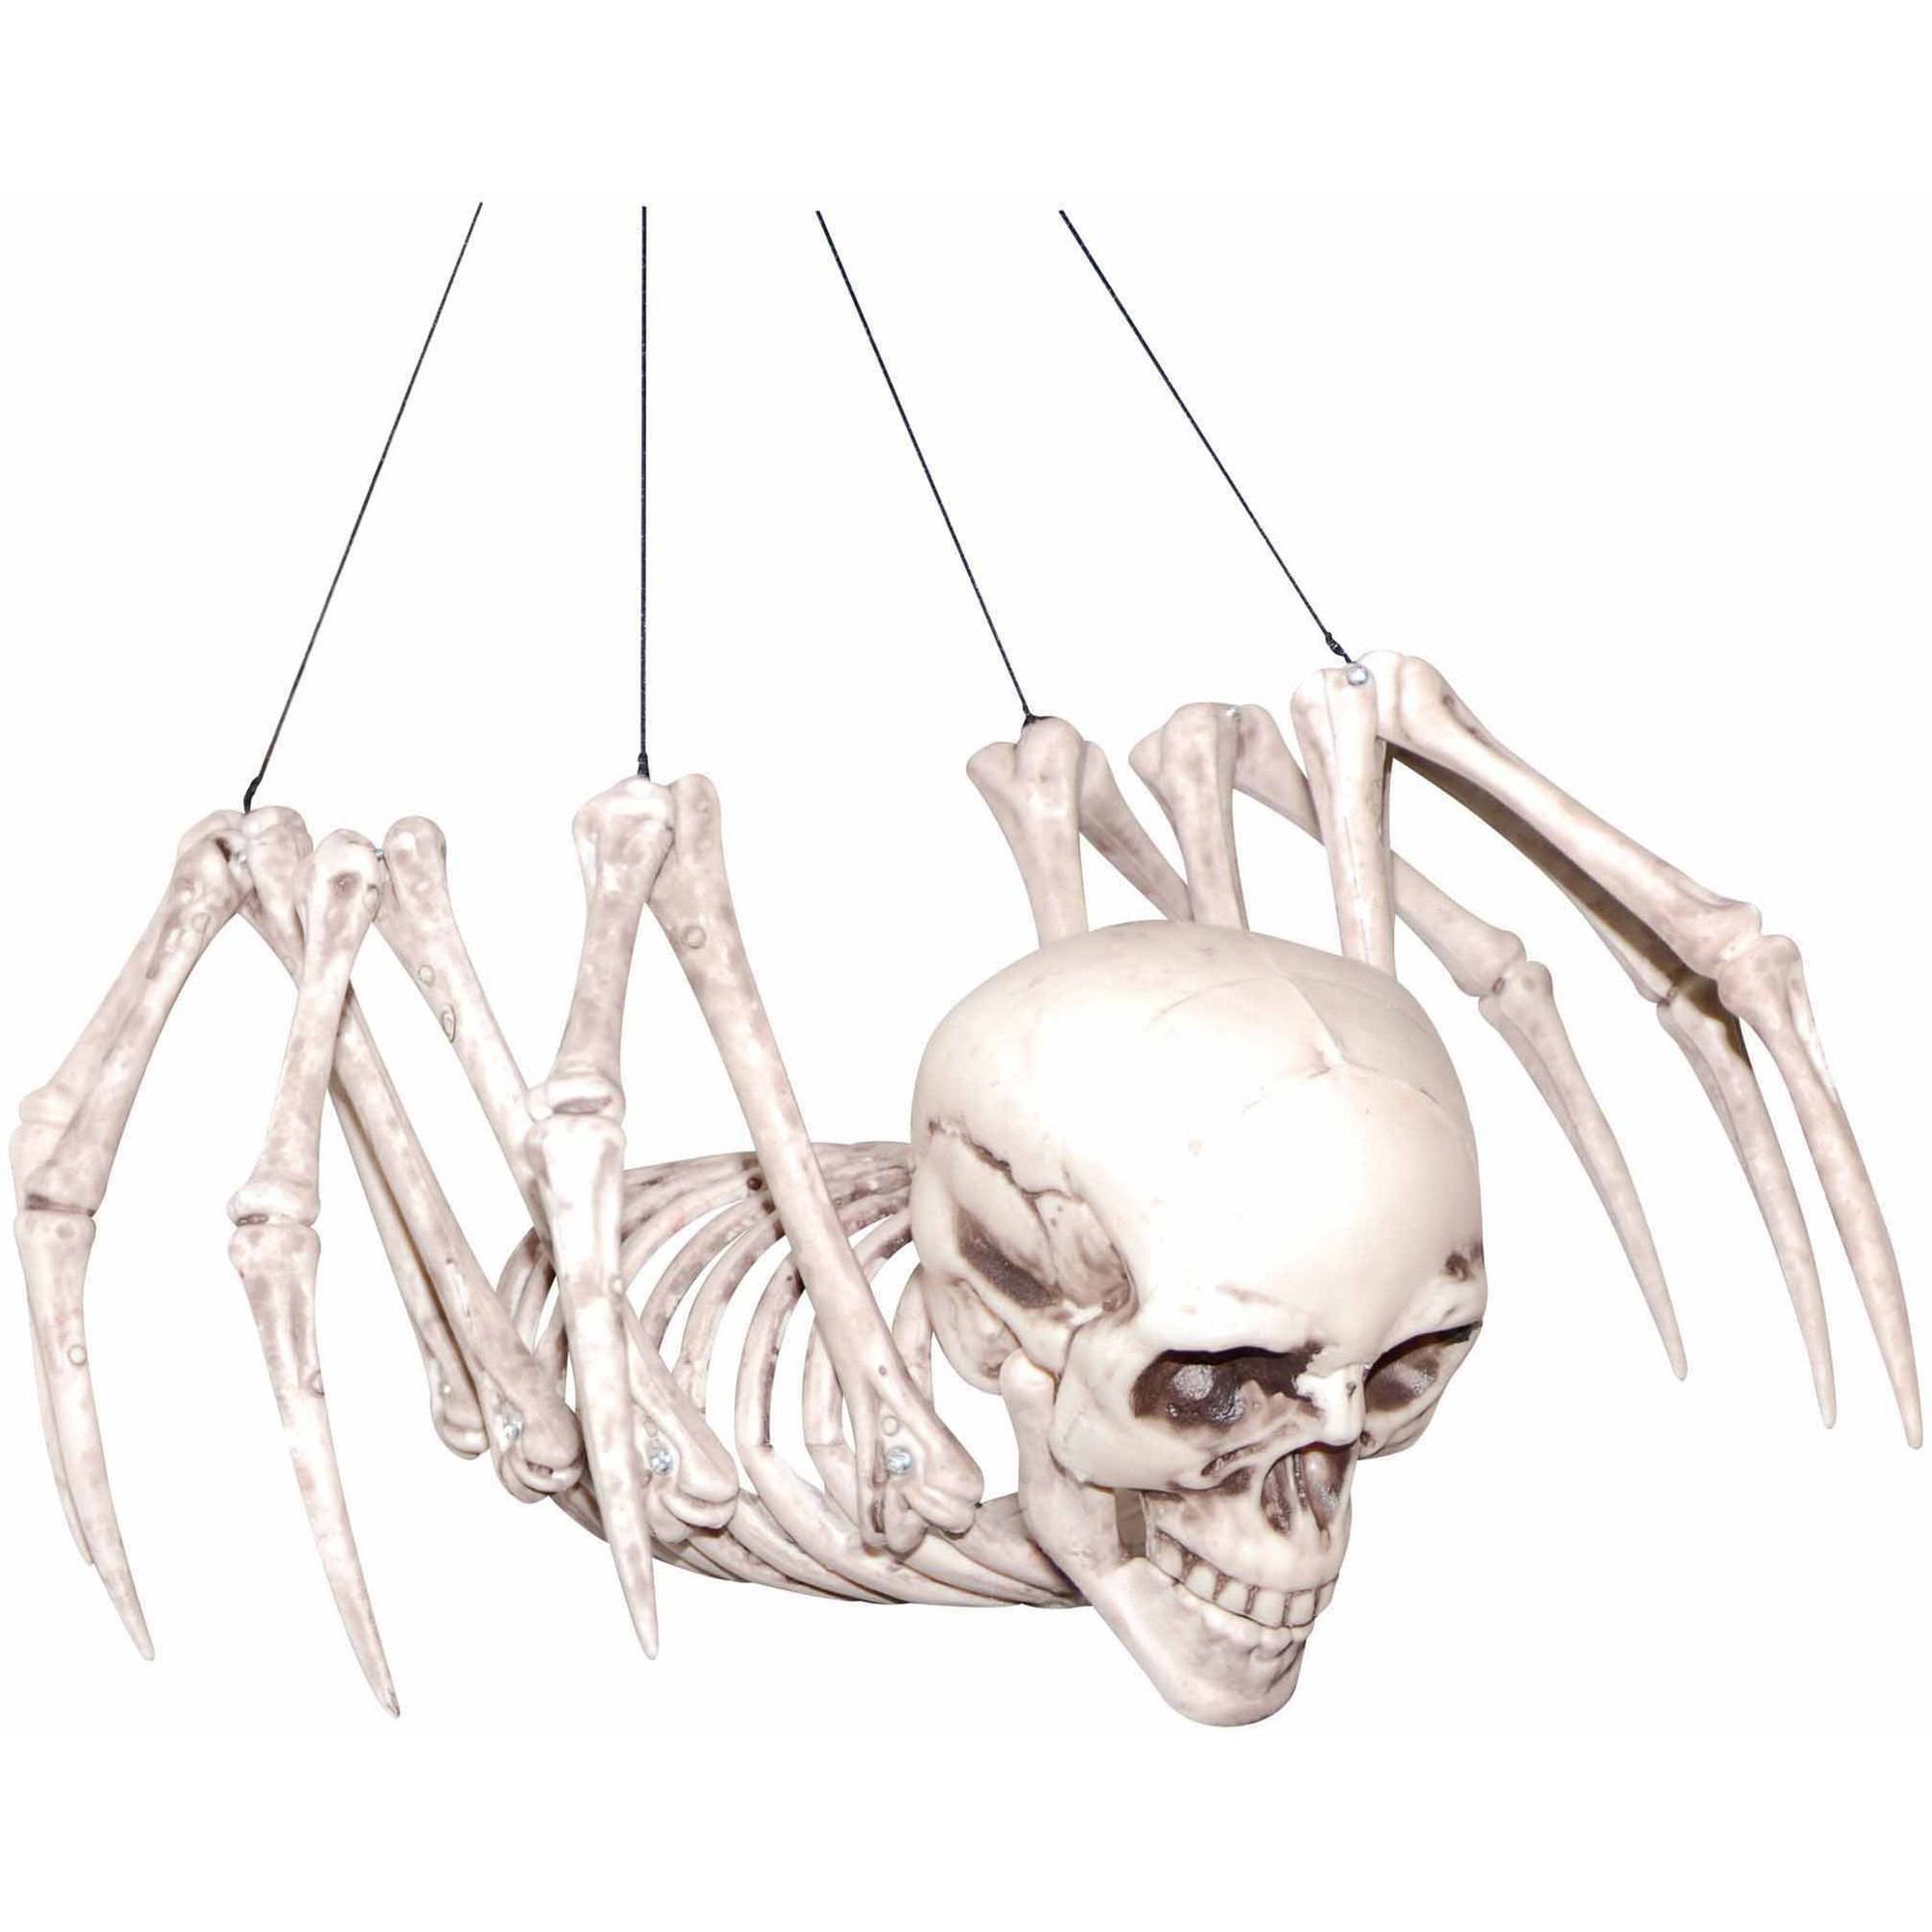 A spider's skeleton